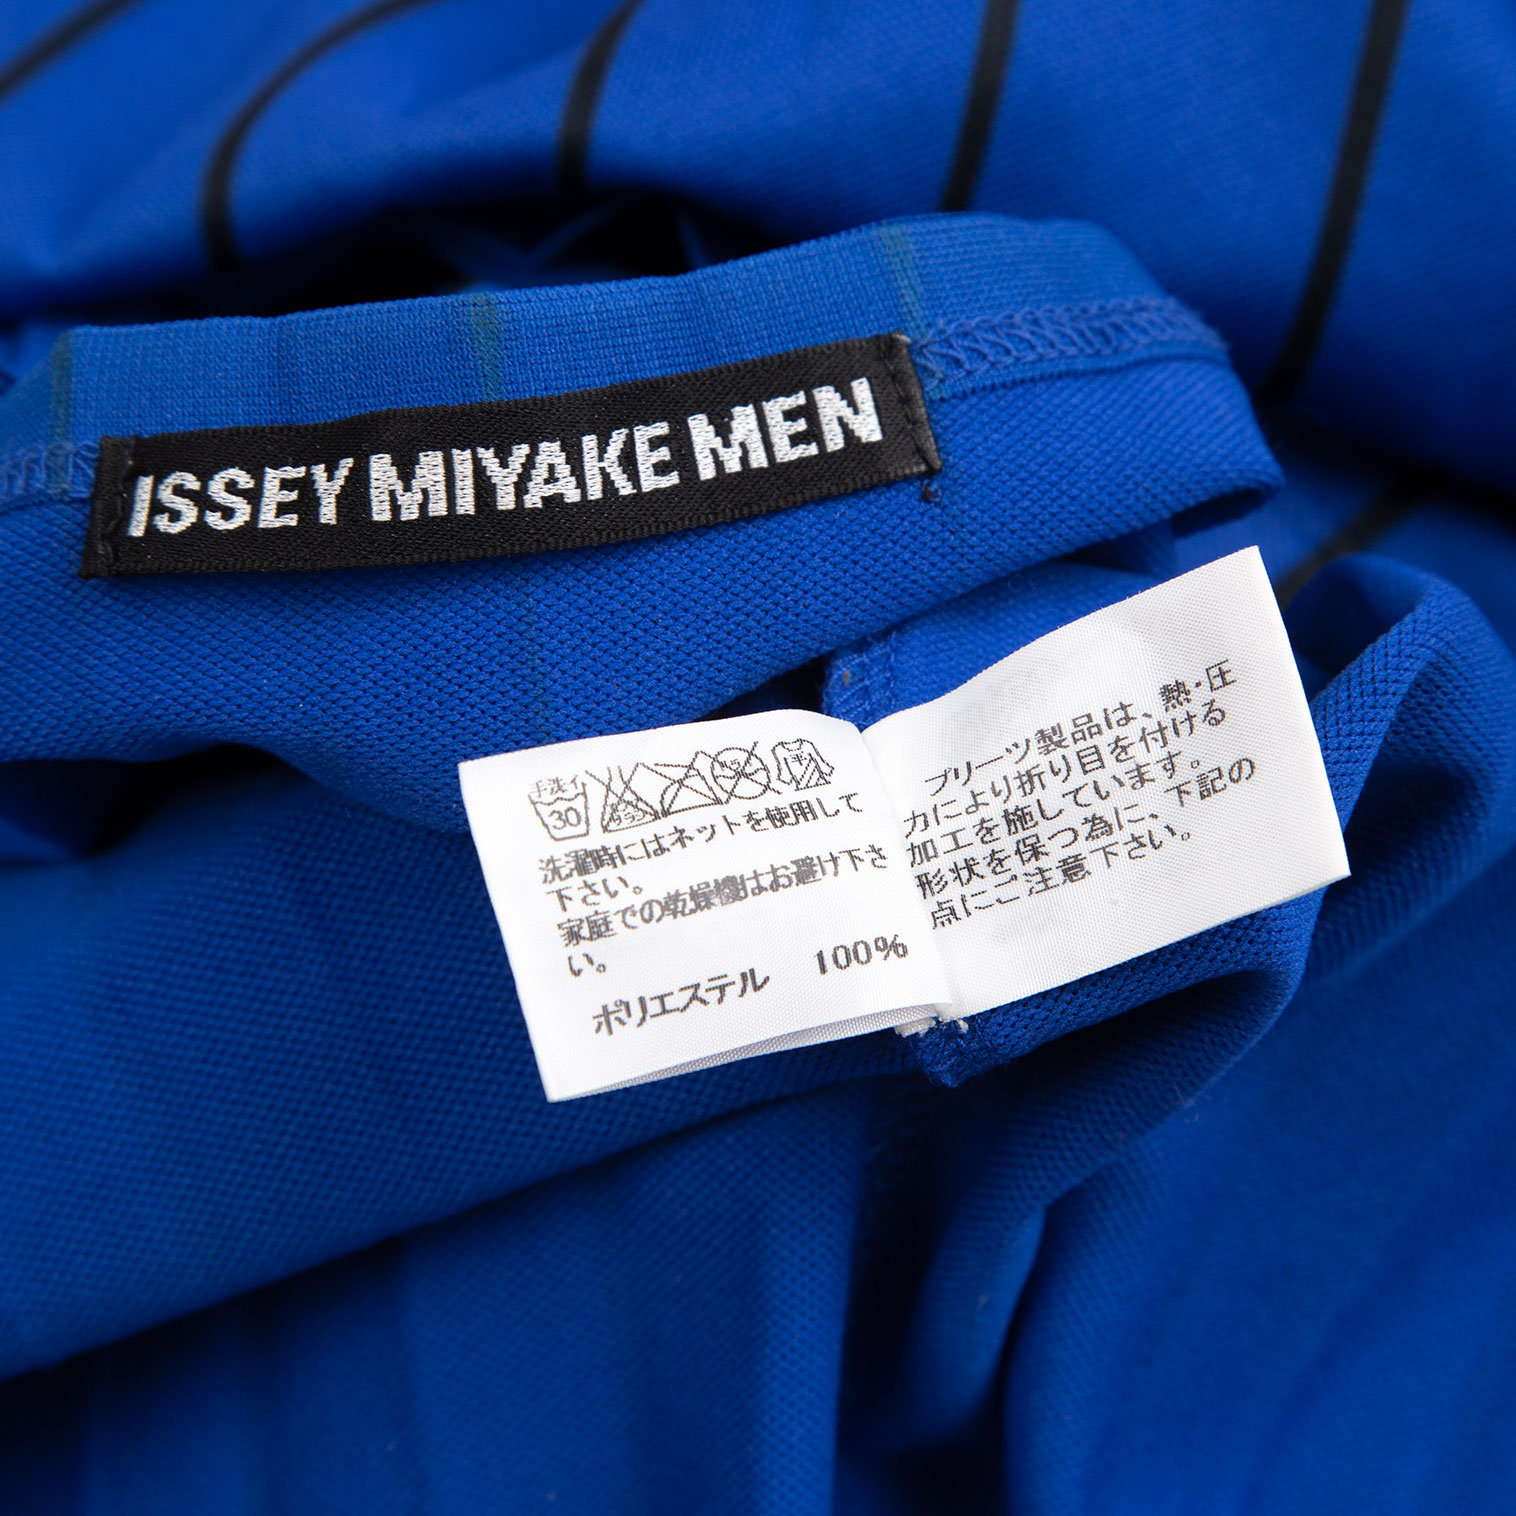 イッセイミヤケ メンISSEY MIYAKE MEN プリーツストライプTシャツ 青4